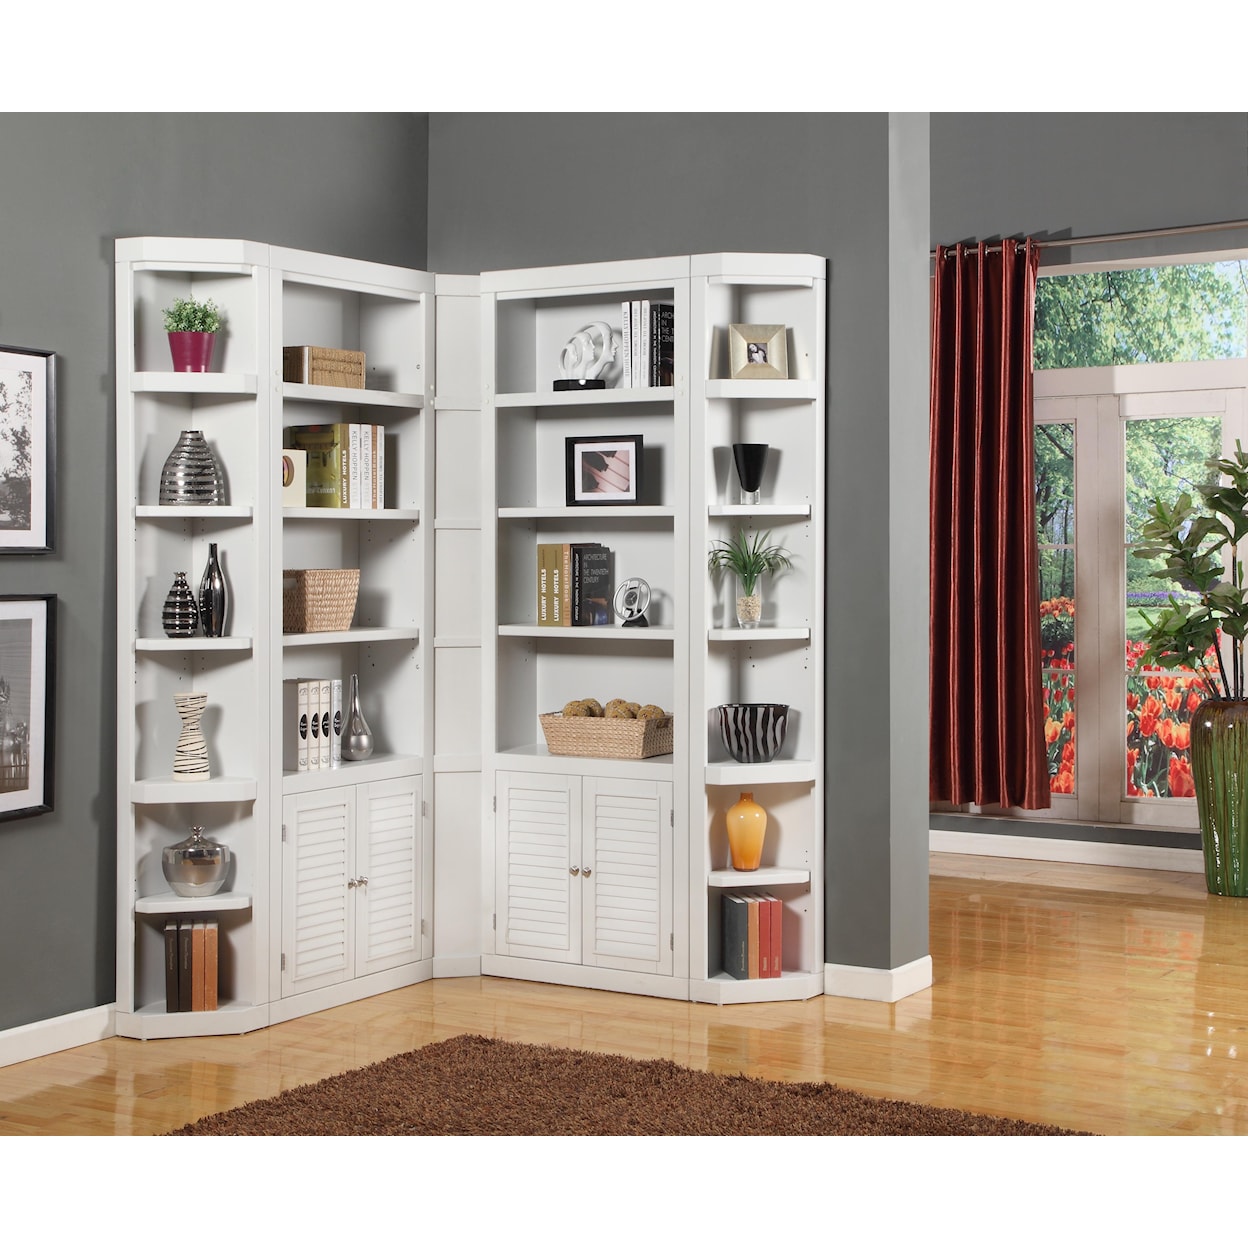 Paramount Furniture Boca Corner Bookcase Unit